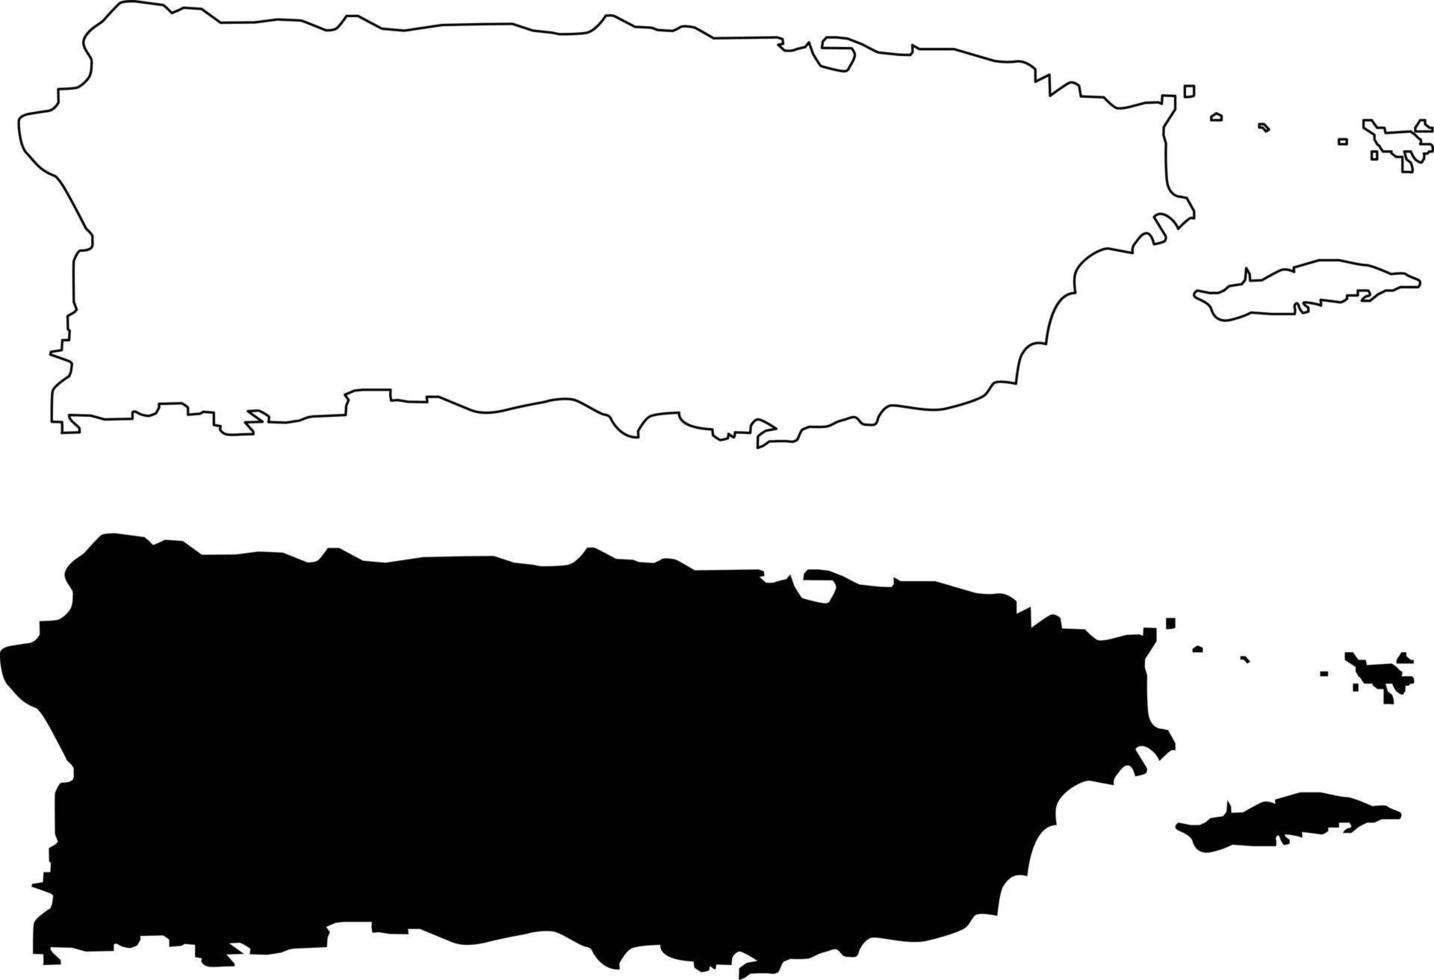 mapa de porto rico em fundo branco. sinal do estado de porto rico. símbolo de mapa de contorno preto do estado de porto rico dos eua. estilo plano. vetor